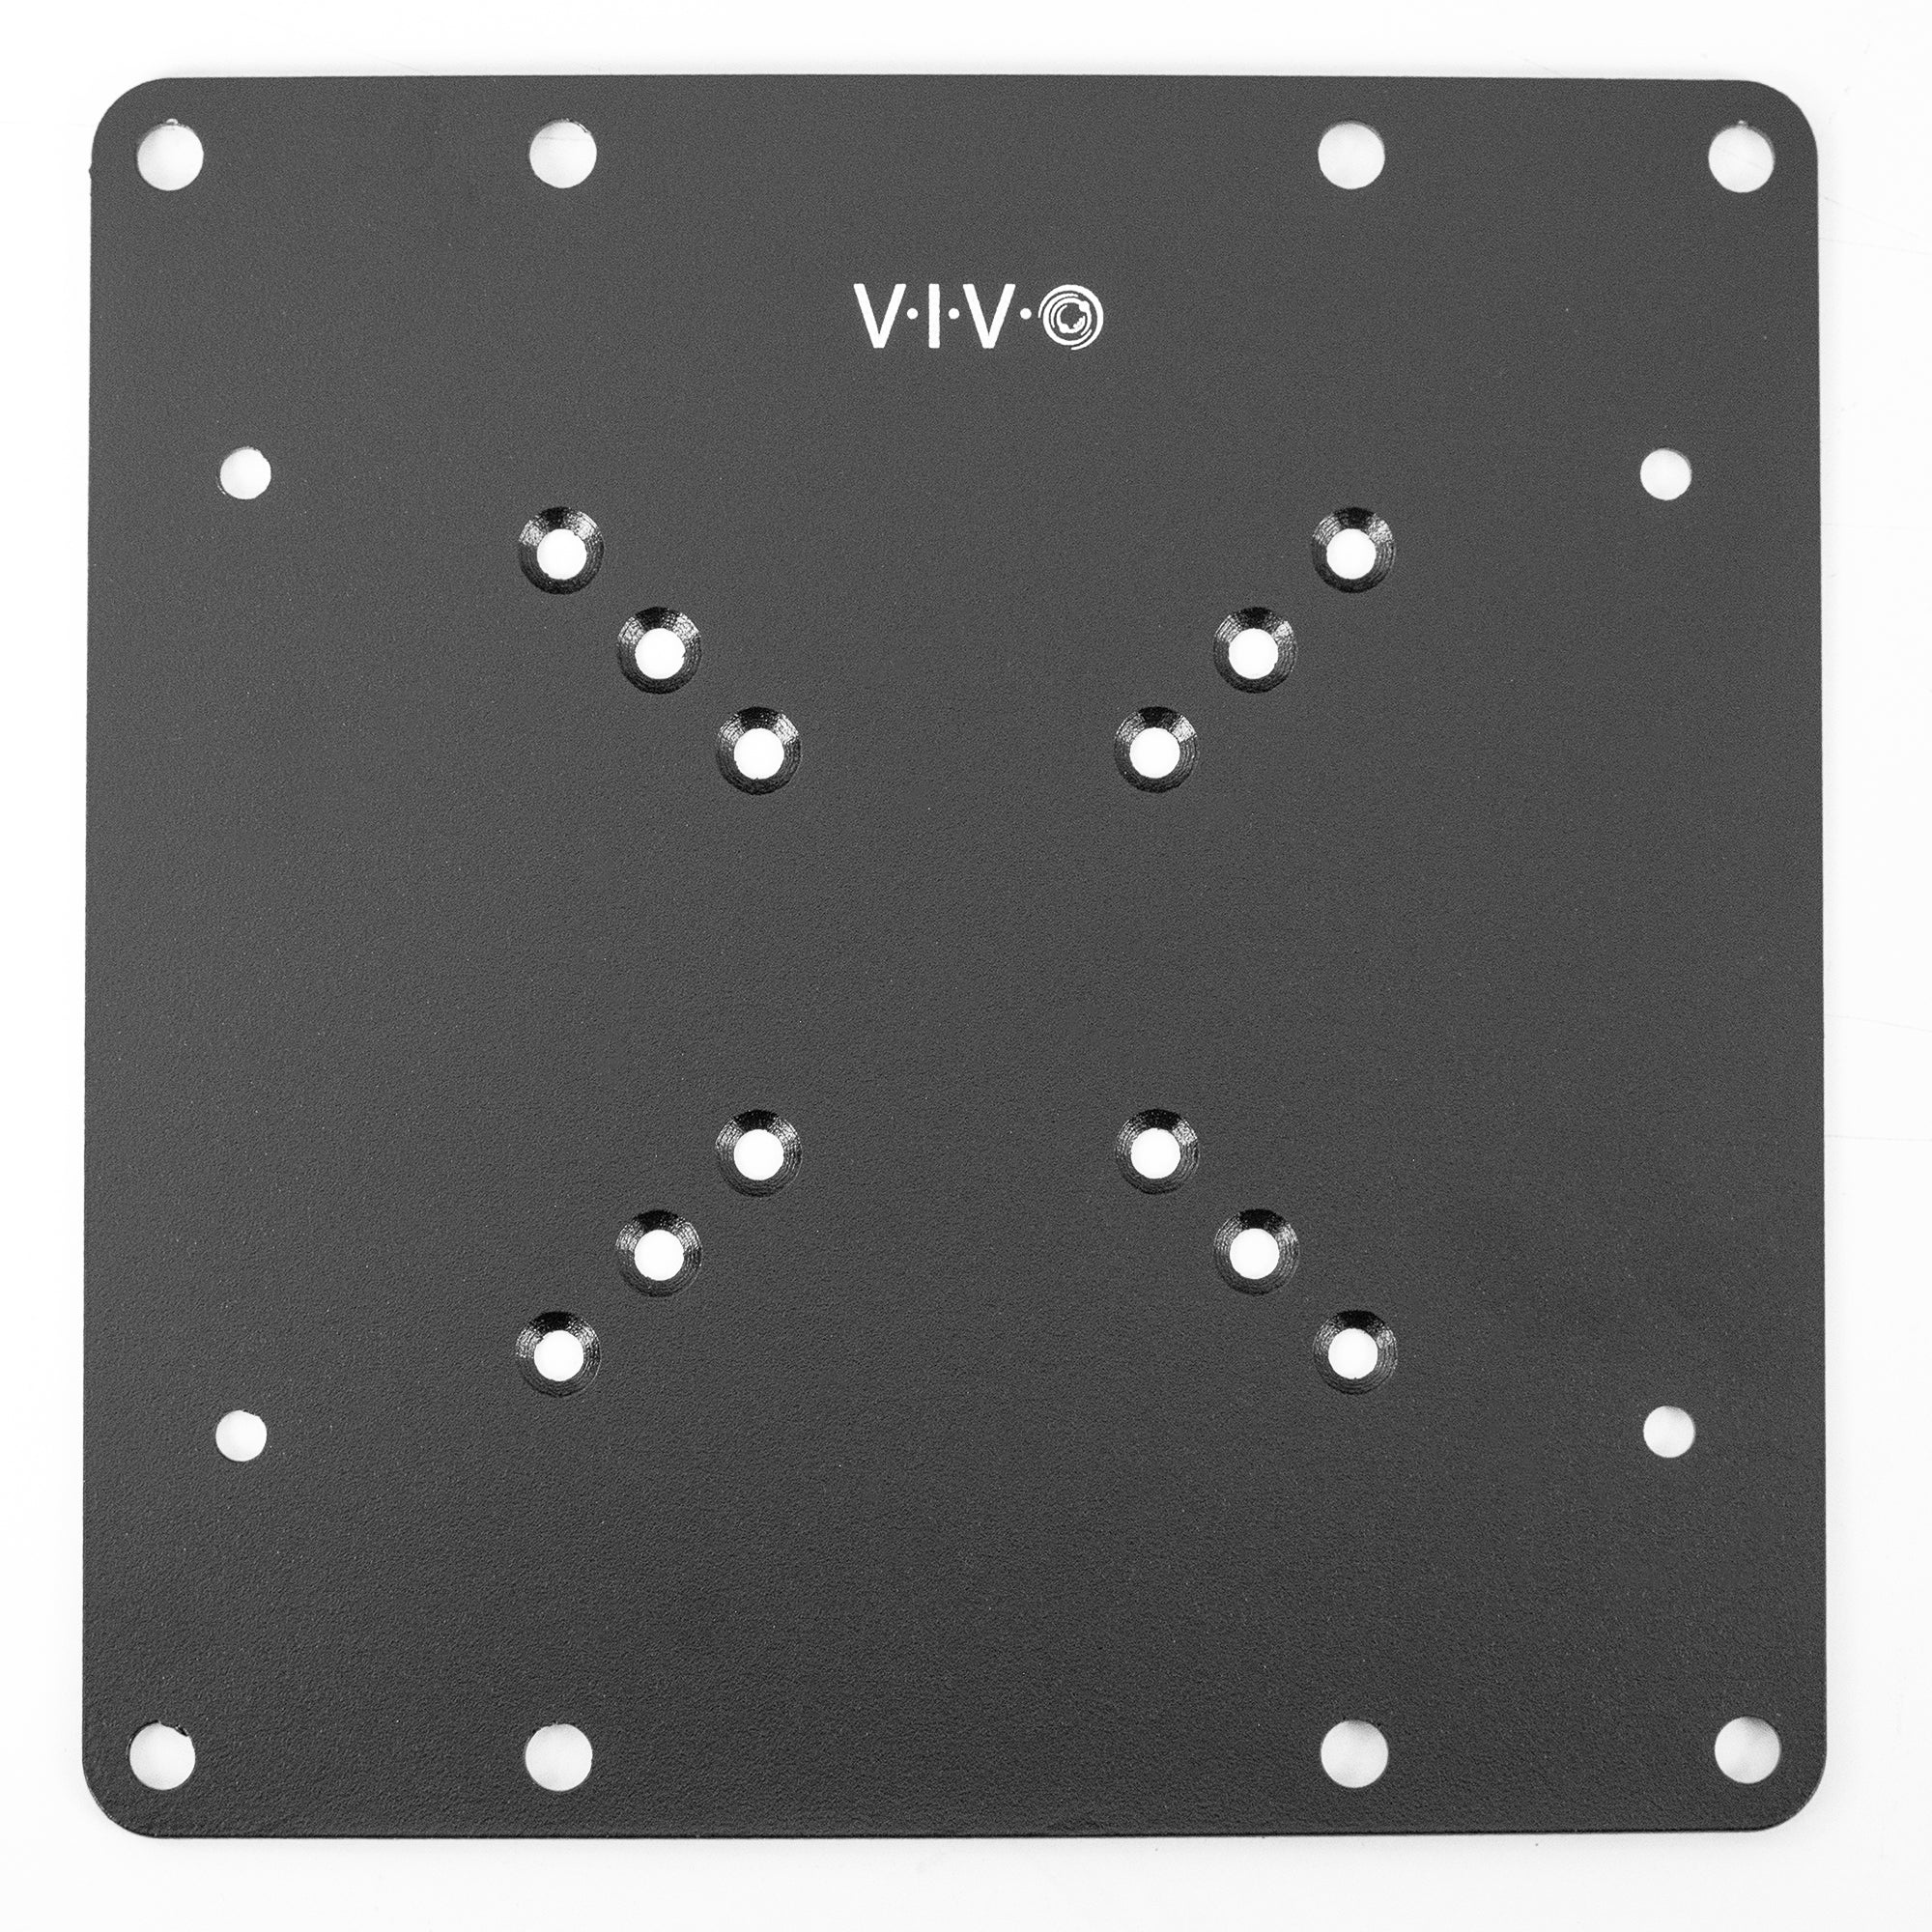 VESA Mount Adapter Plate 200mm x 100mm by UPLIFT Desk